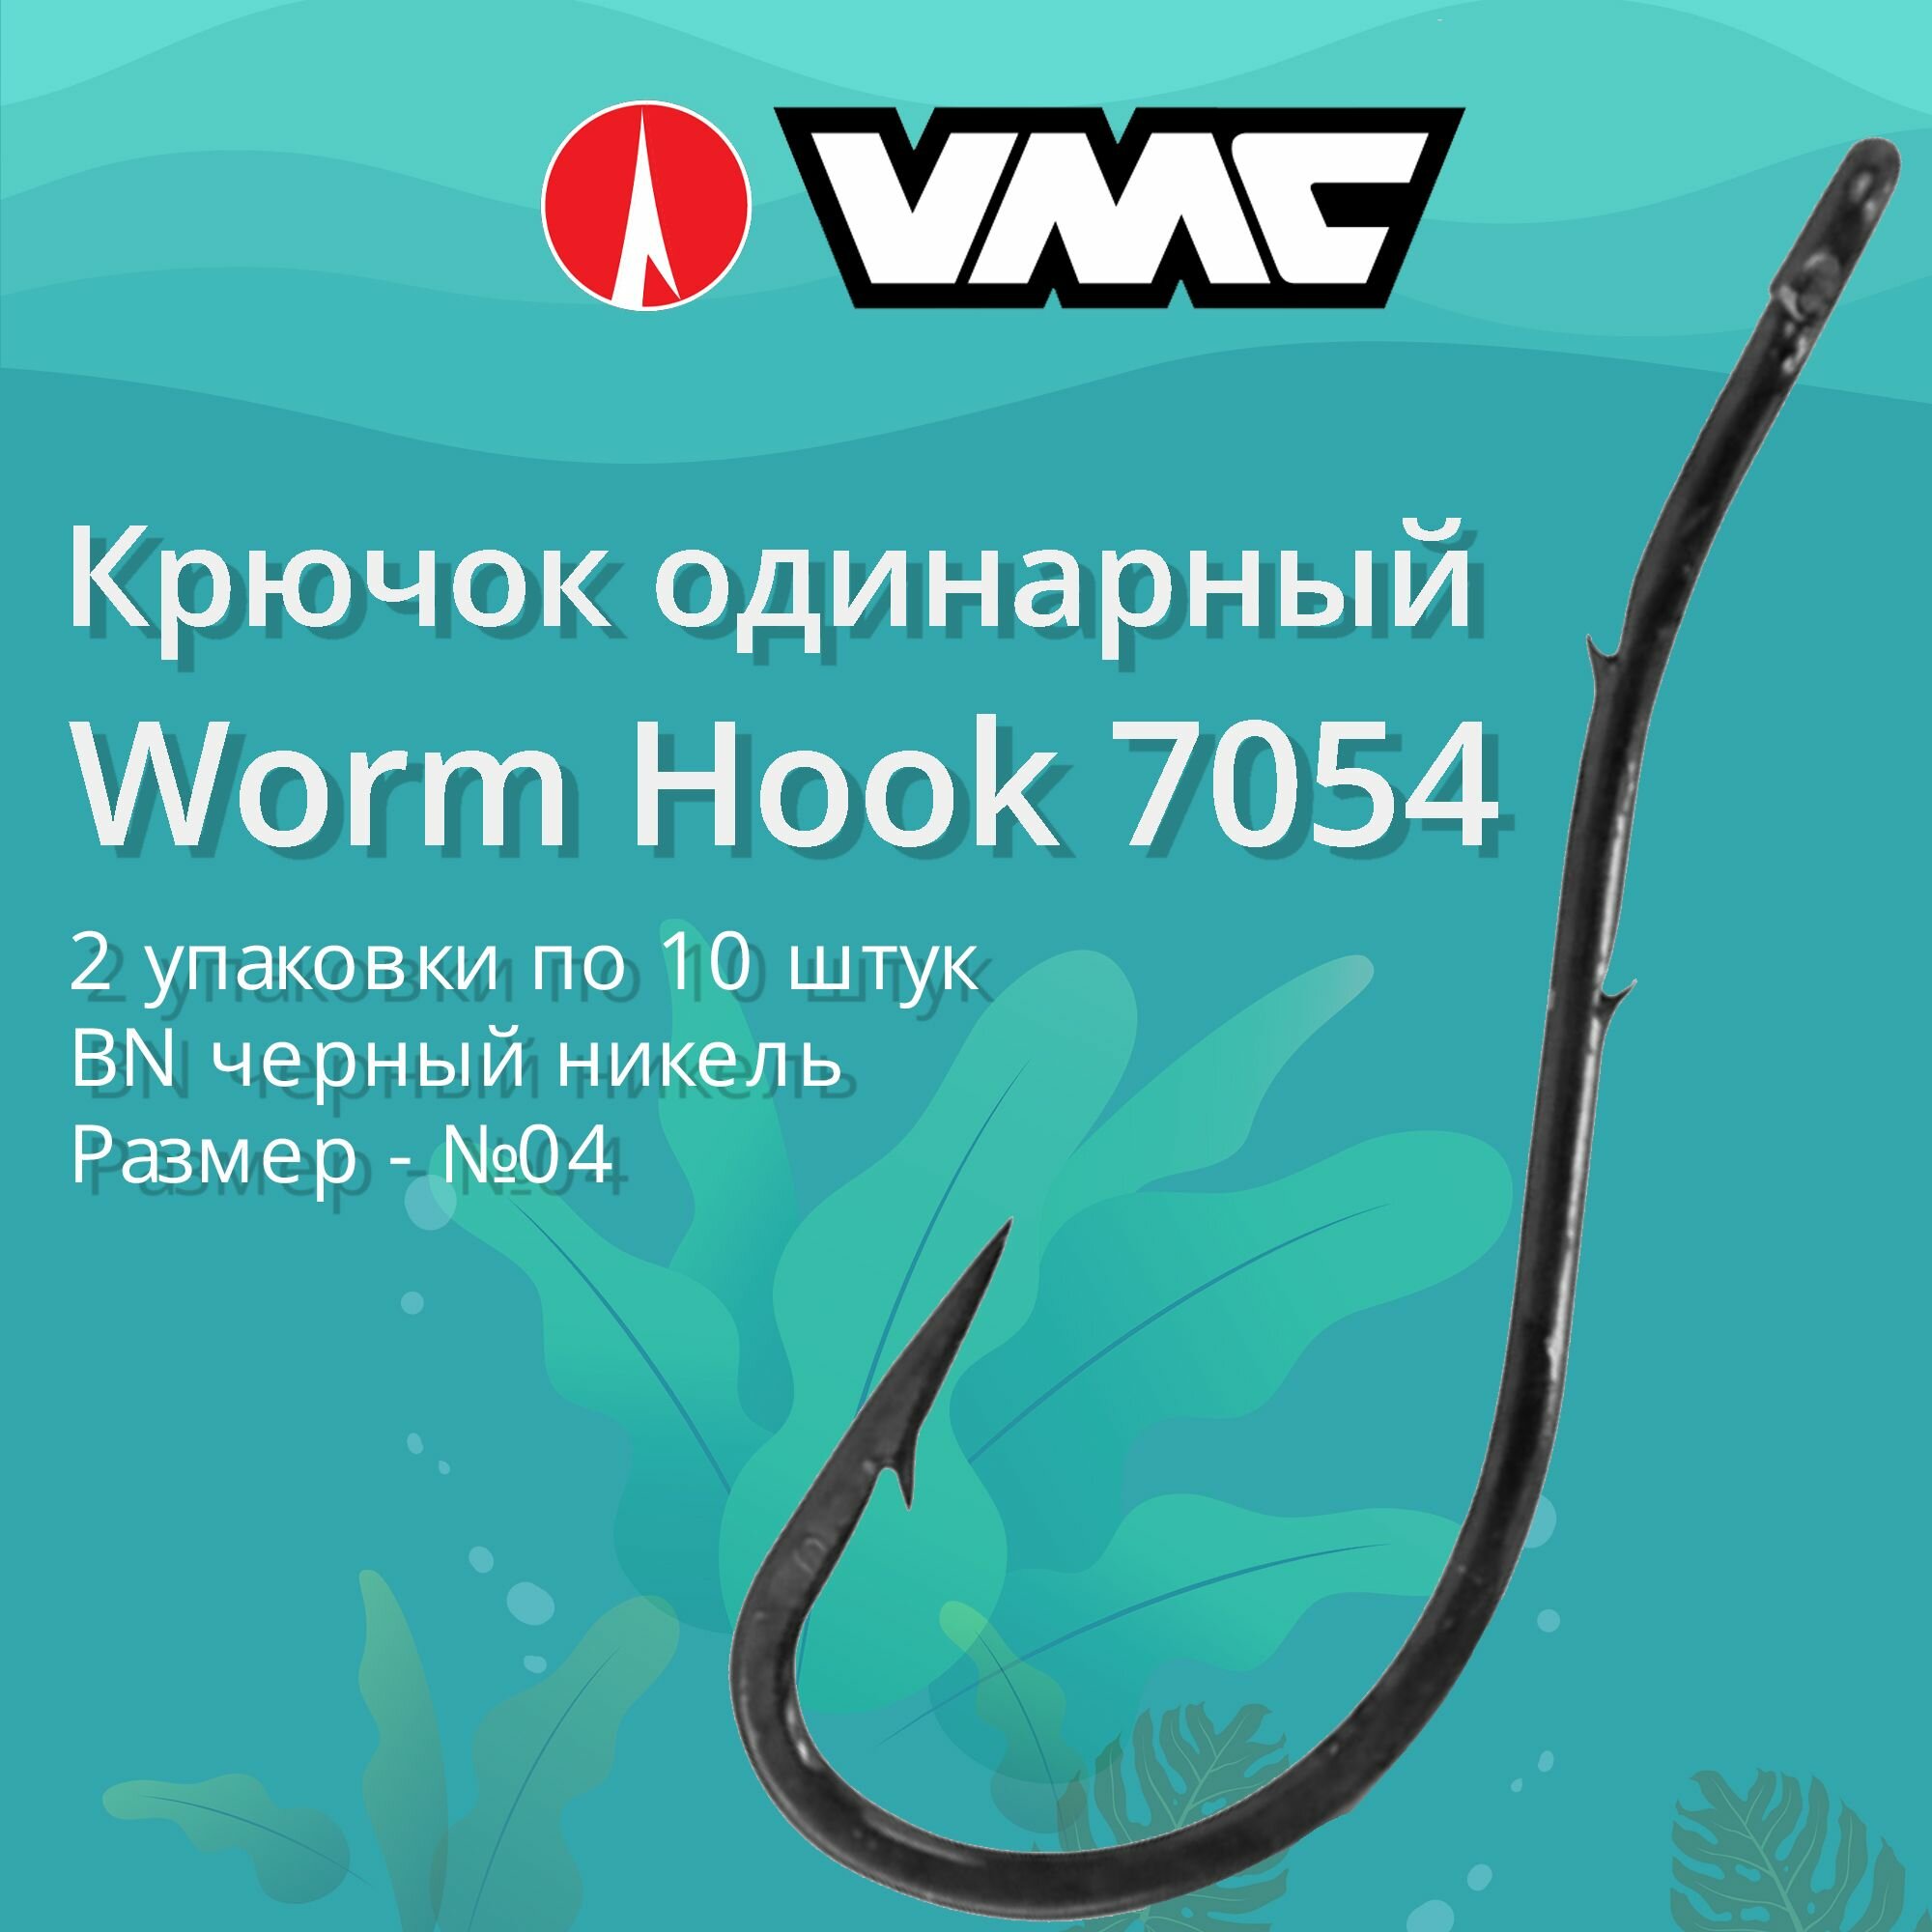 Крючки для рыбалки (одинарный) VMC Worm Hook 7054 BN (черн. никель) №04 2 упаковки по 10 штук